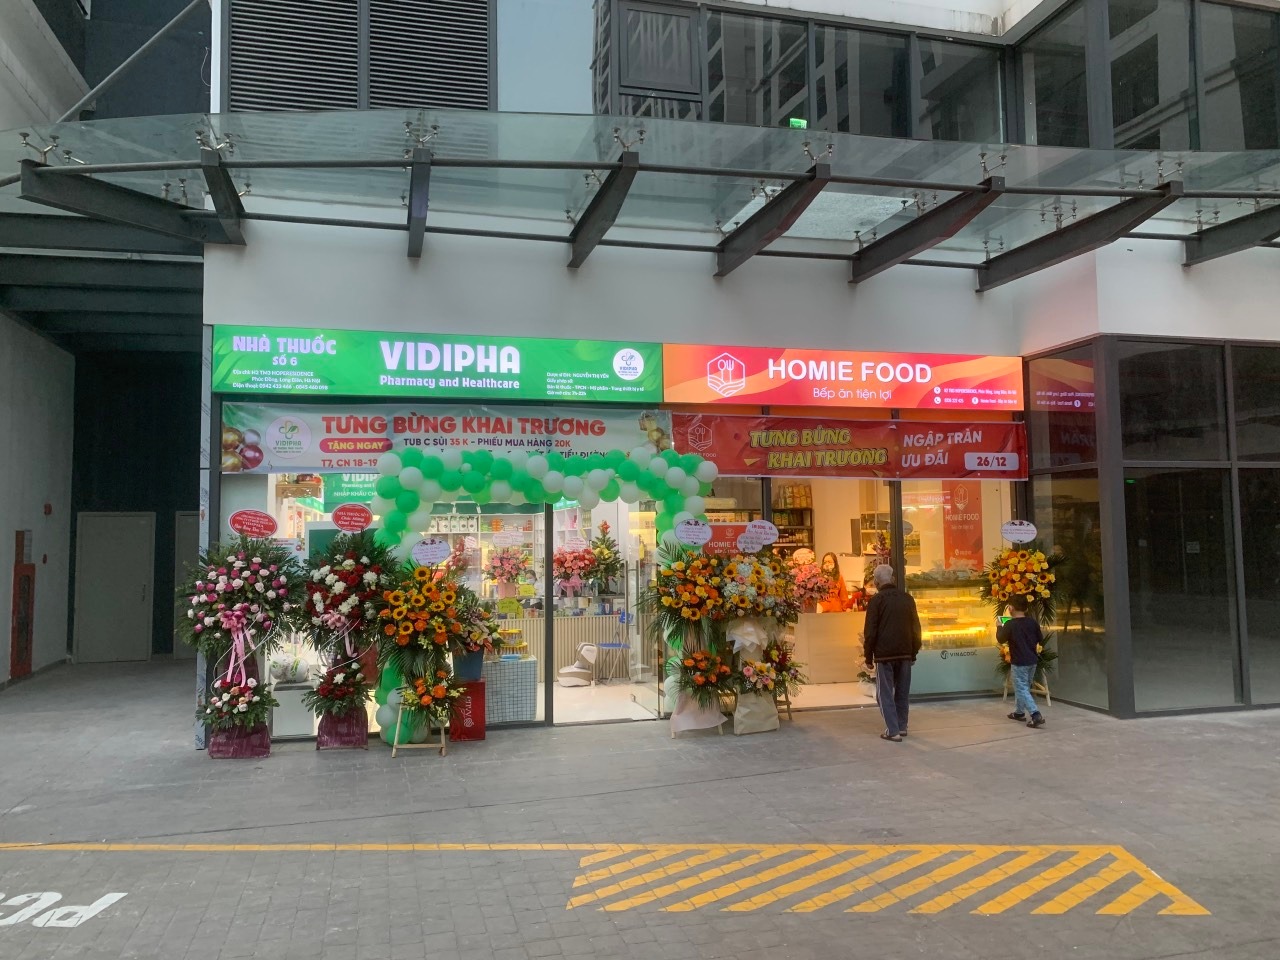 nhà thuốc Vidipha